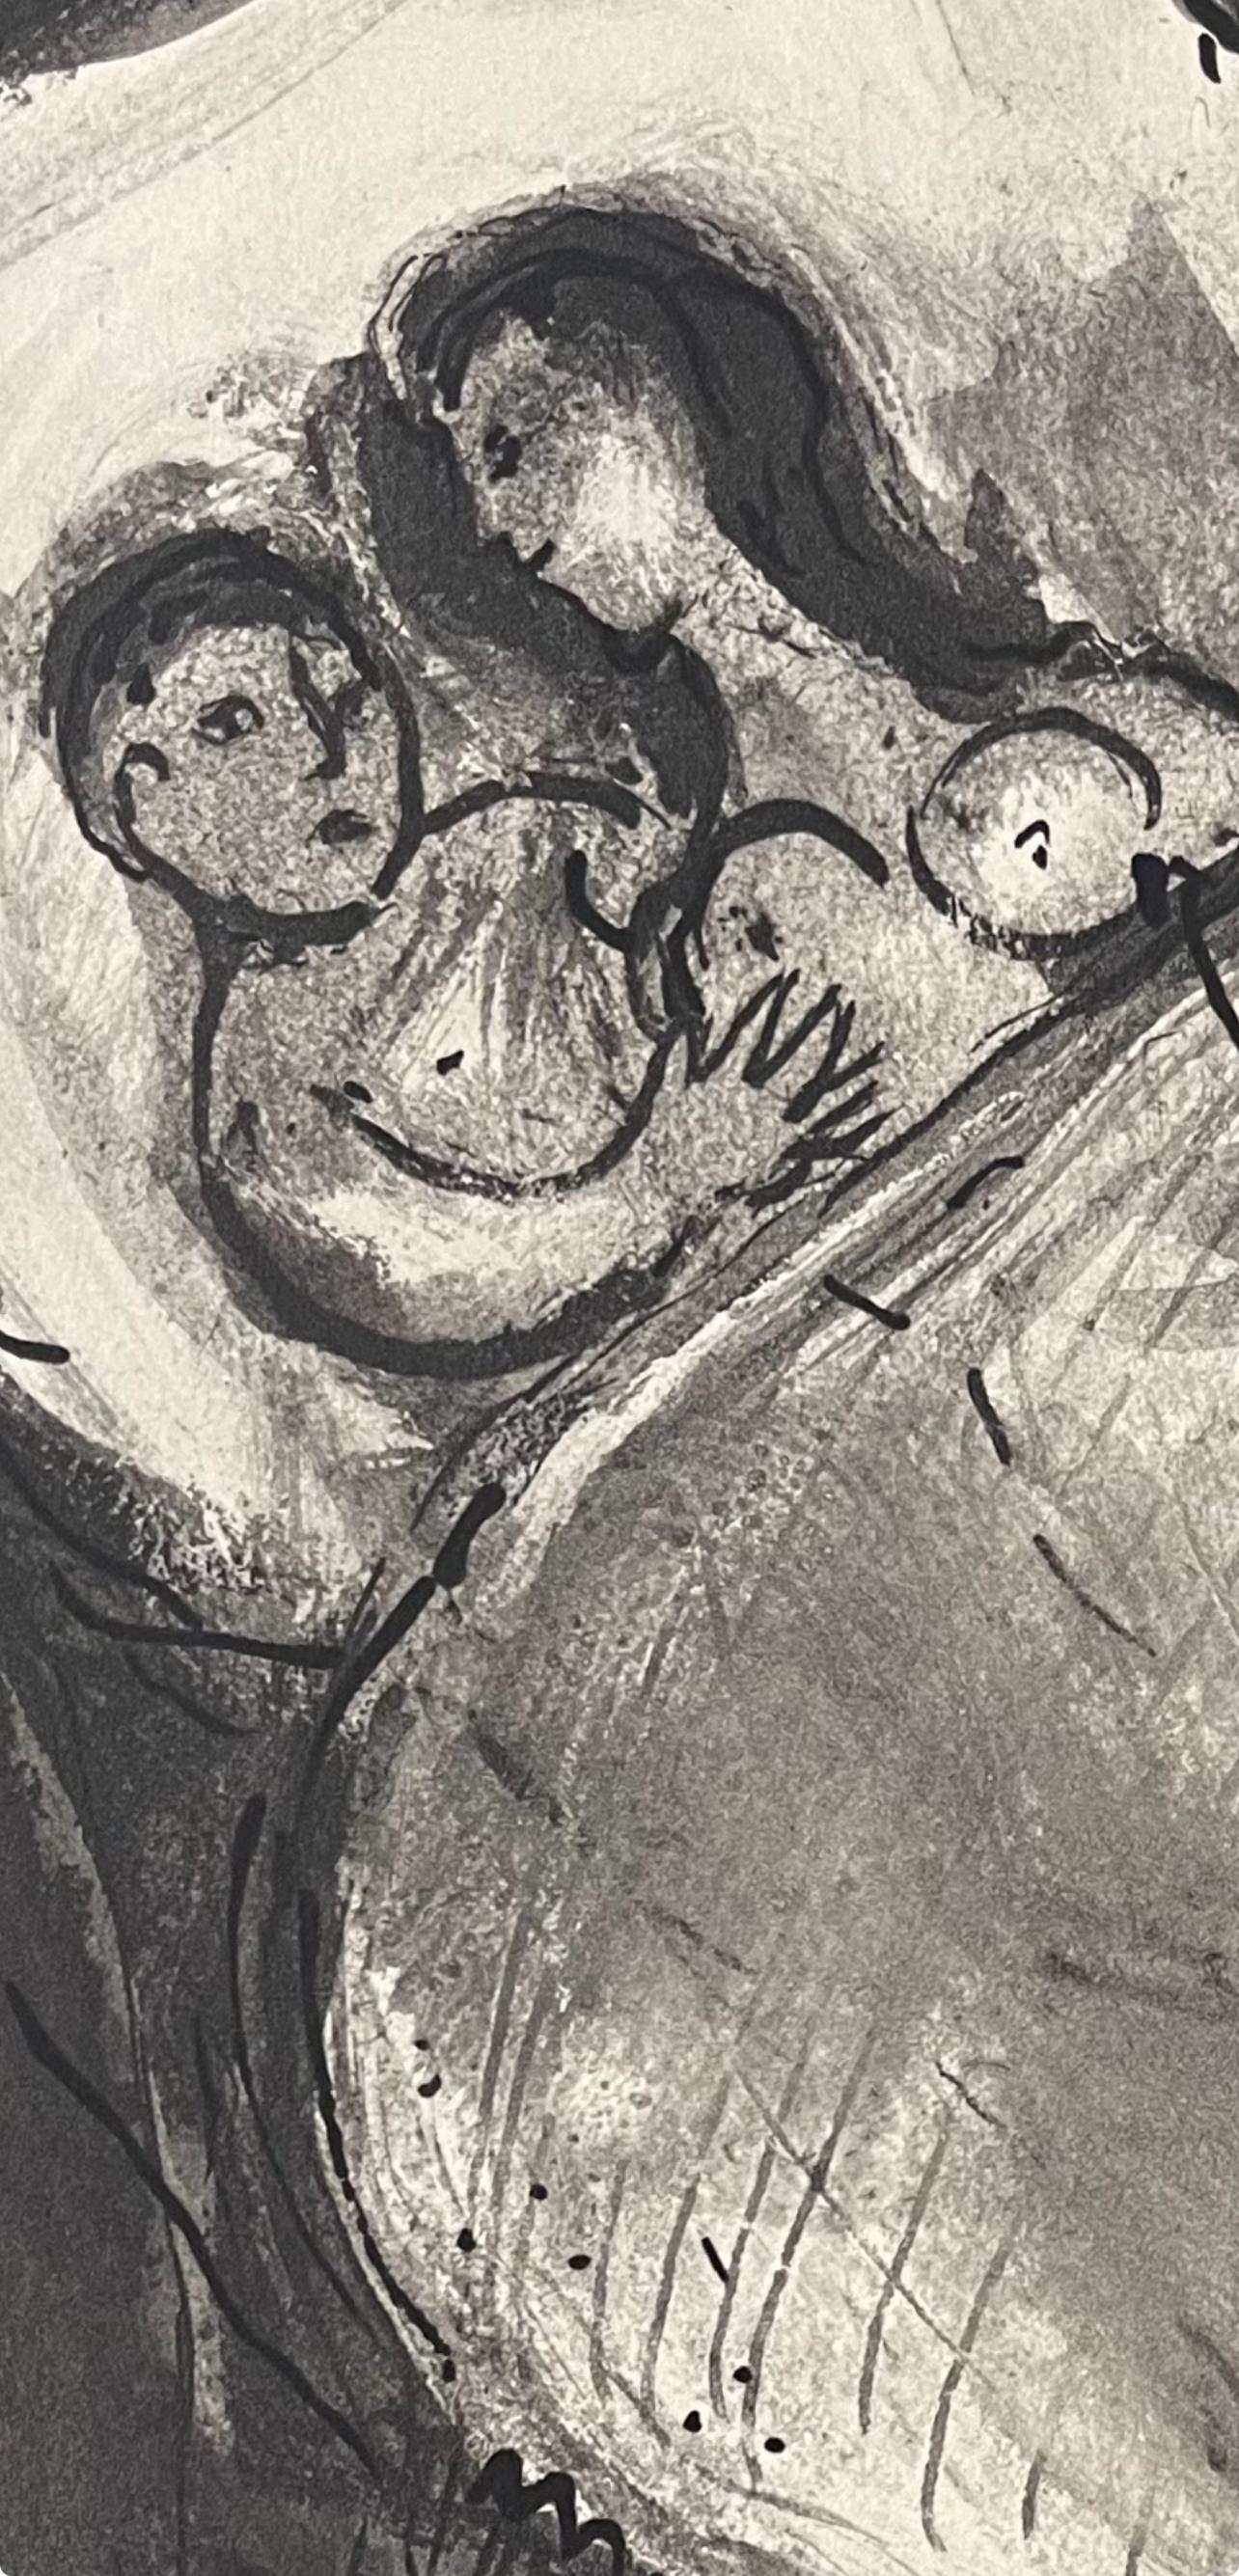 Lithograph on vélin du Marais paper. Inscription: Unsigned and unnumbered, as issued. Good condition. Notes: From the volume, Verve: Revue Artistique et Littéraire, Vol. VI, N° 24, 1950. Published by Éditions de la revue Verve, Paris; printed by